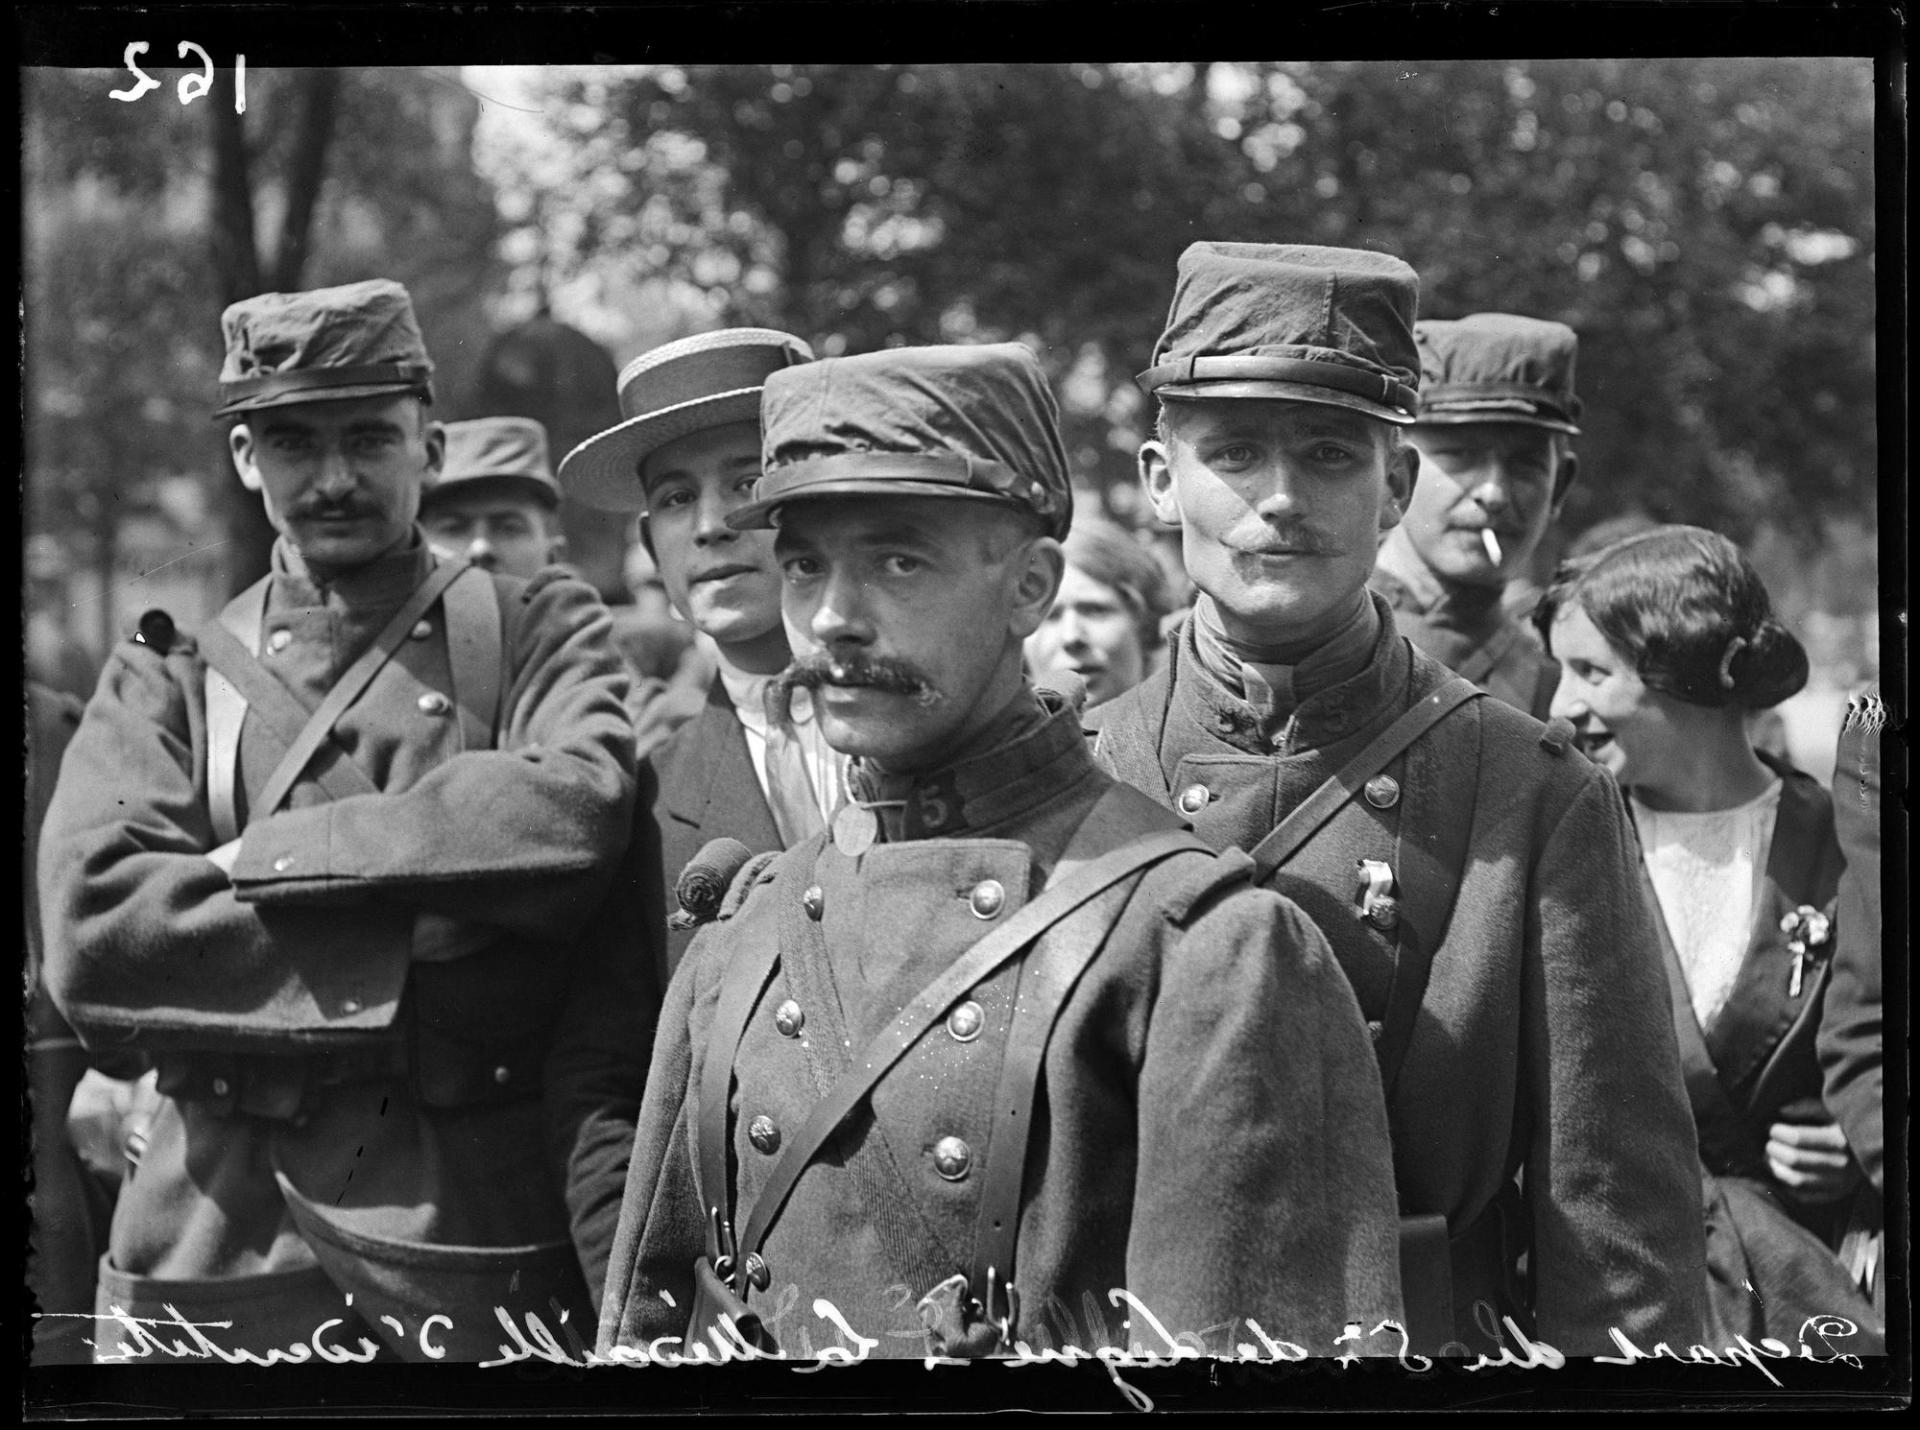 Soldats francais en 1914